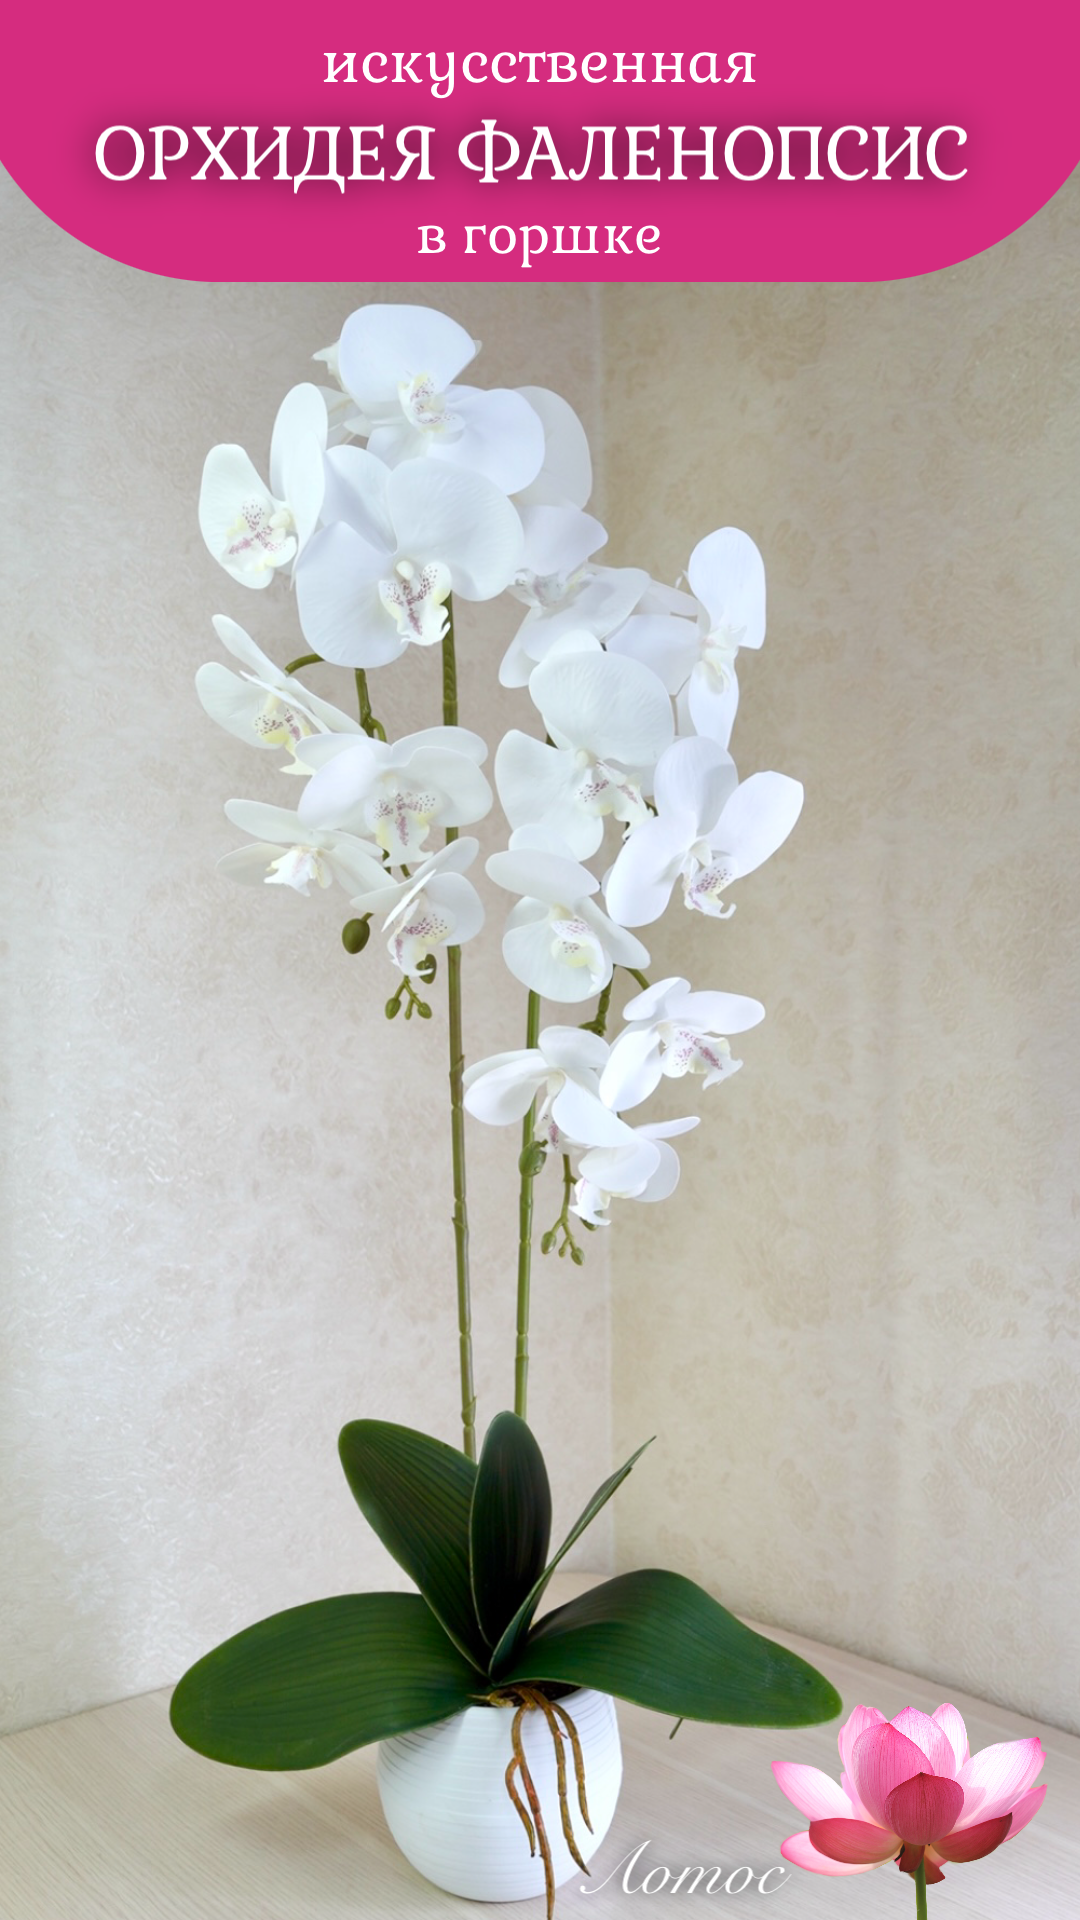 Орхидея фаленопсис искусственная в горшке от бренда"Лотос"